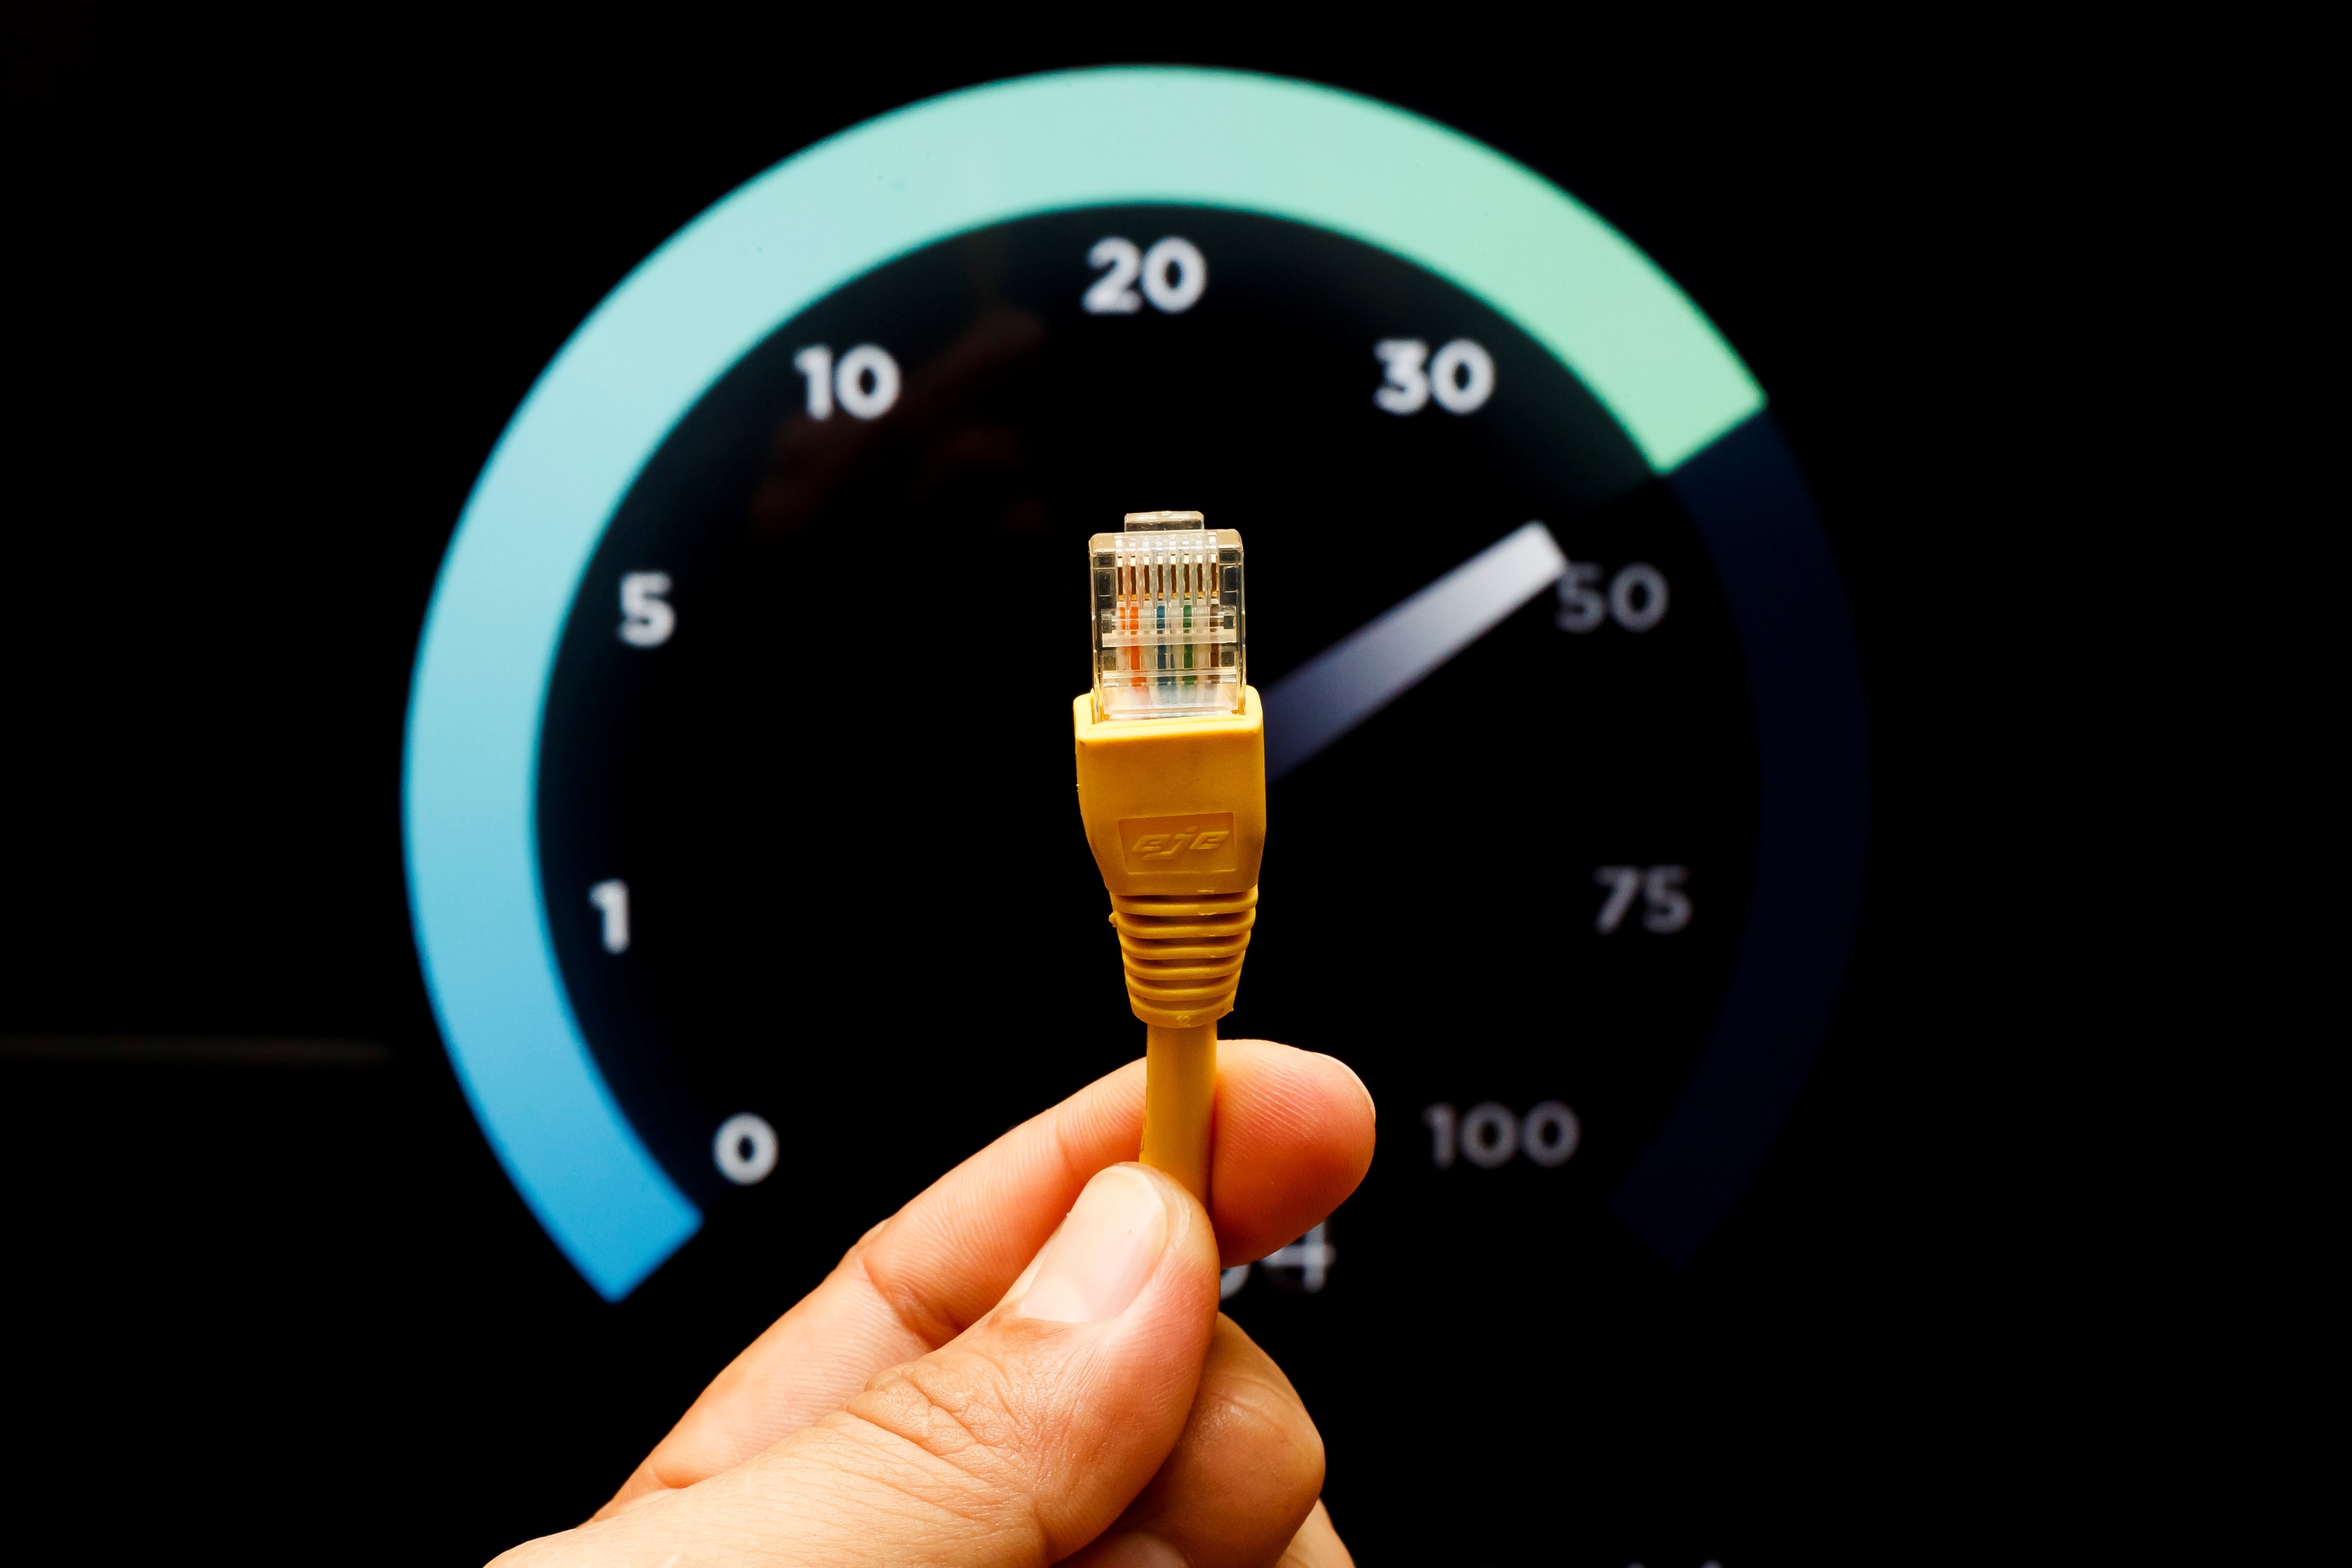 Mengukur kecepatan internet berbeda dengan mengukur kecepatan jaringan kabel lokal EFE/José Méndez